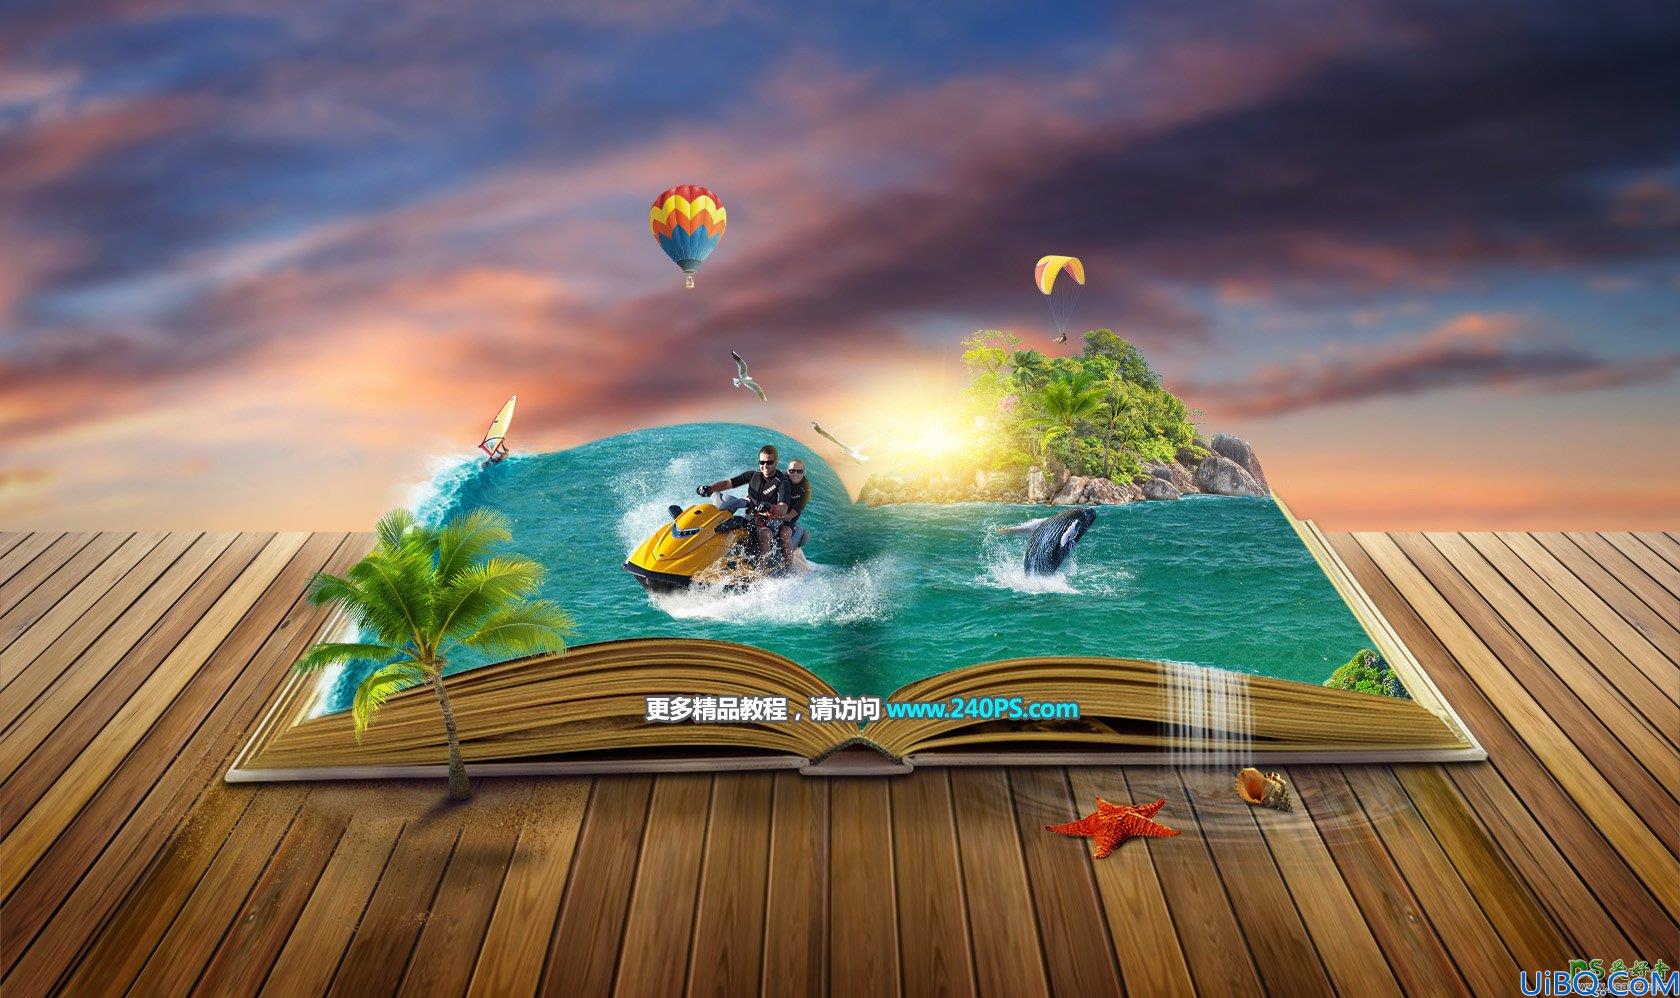 photo合成教程：创意合成书本上夏日海滩冲浪的惬意场景图片。